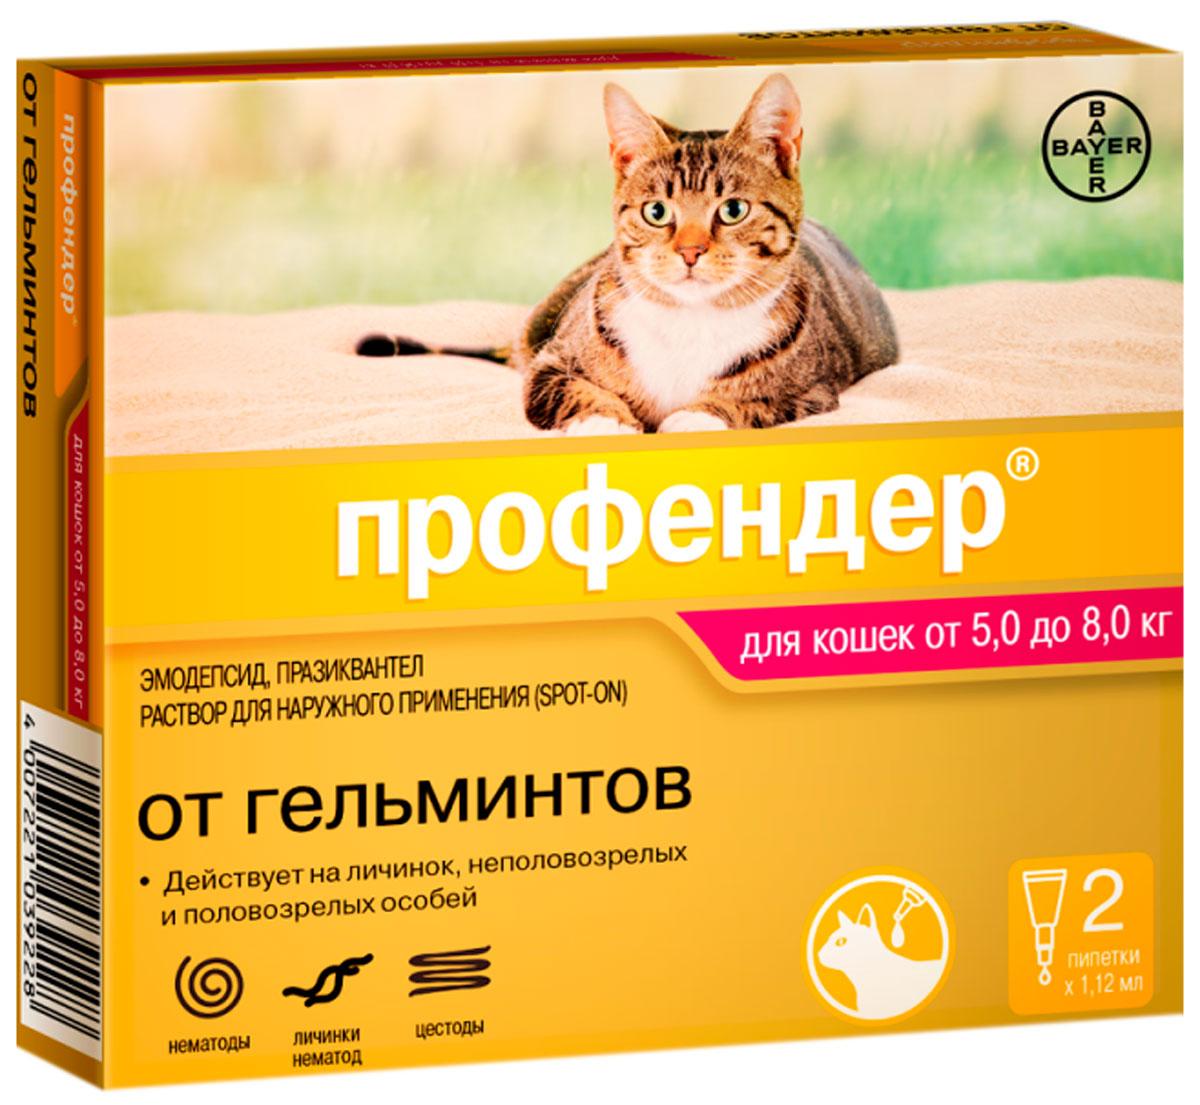 

профендер антигельминтик для кошек весом от 5 до 8 кг (1 уп)